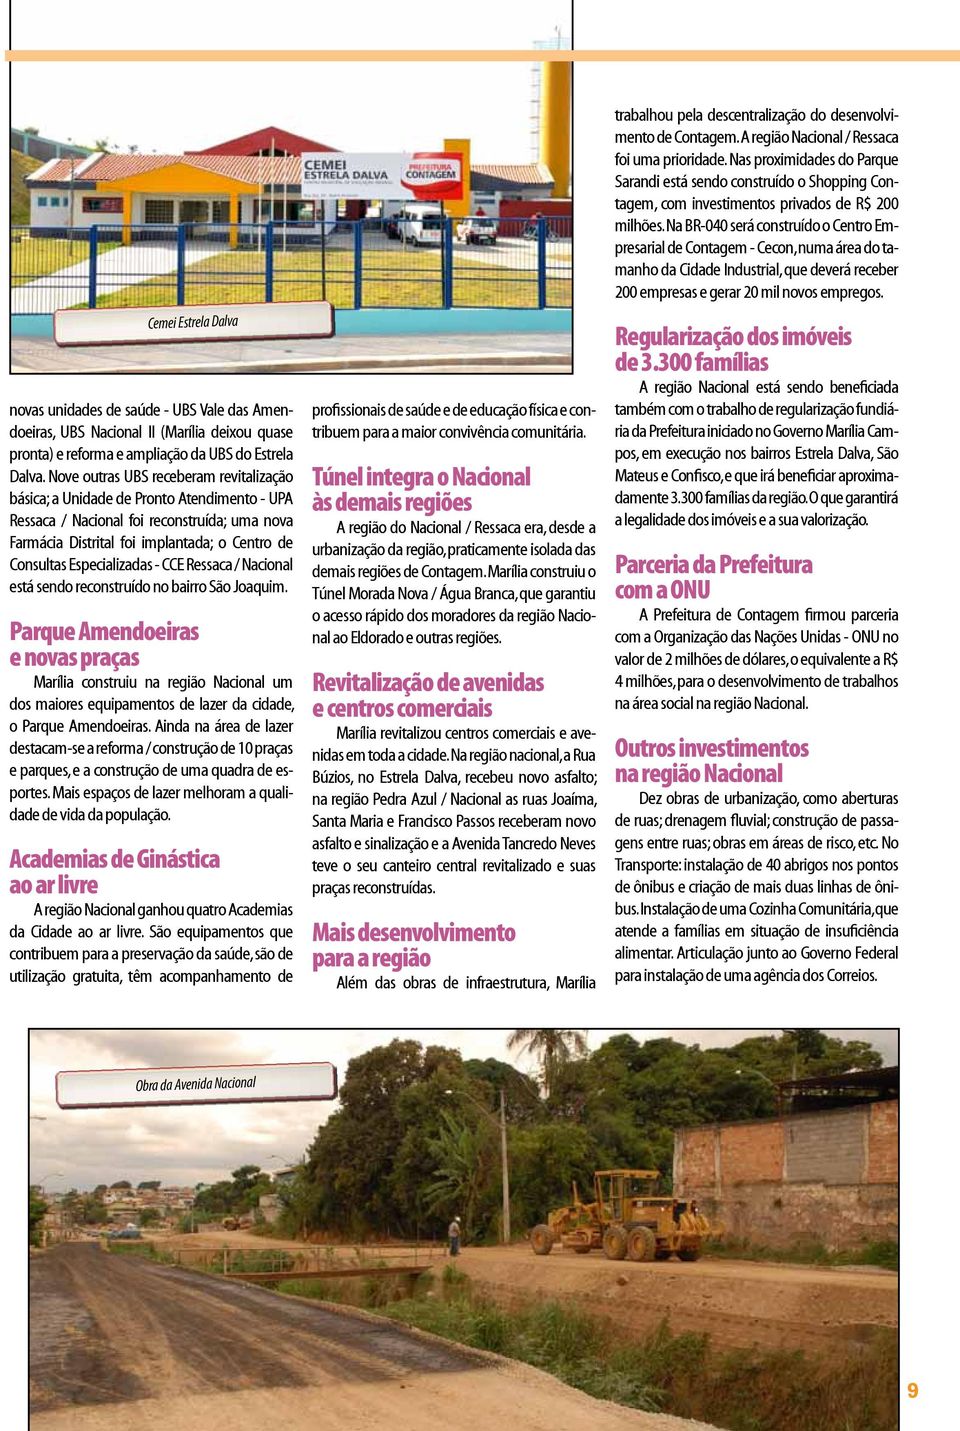 Especializadas - CCE Ressaca / Nacional está sendo reconstruído no bairro São Joaquim.